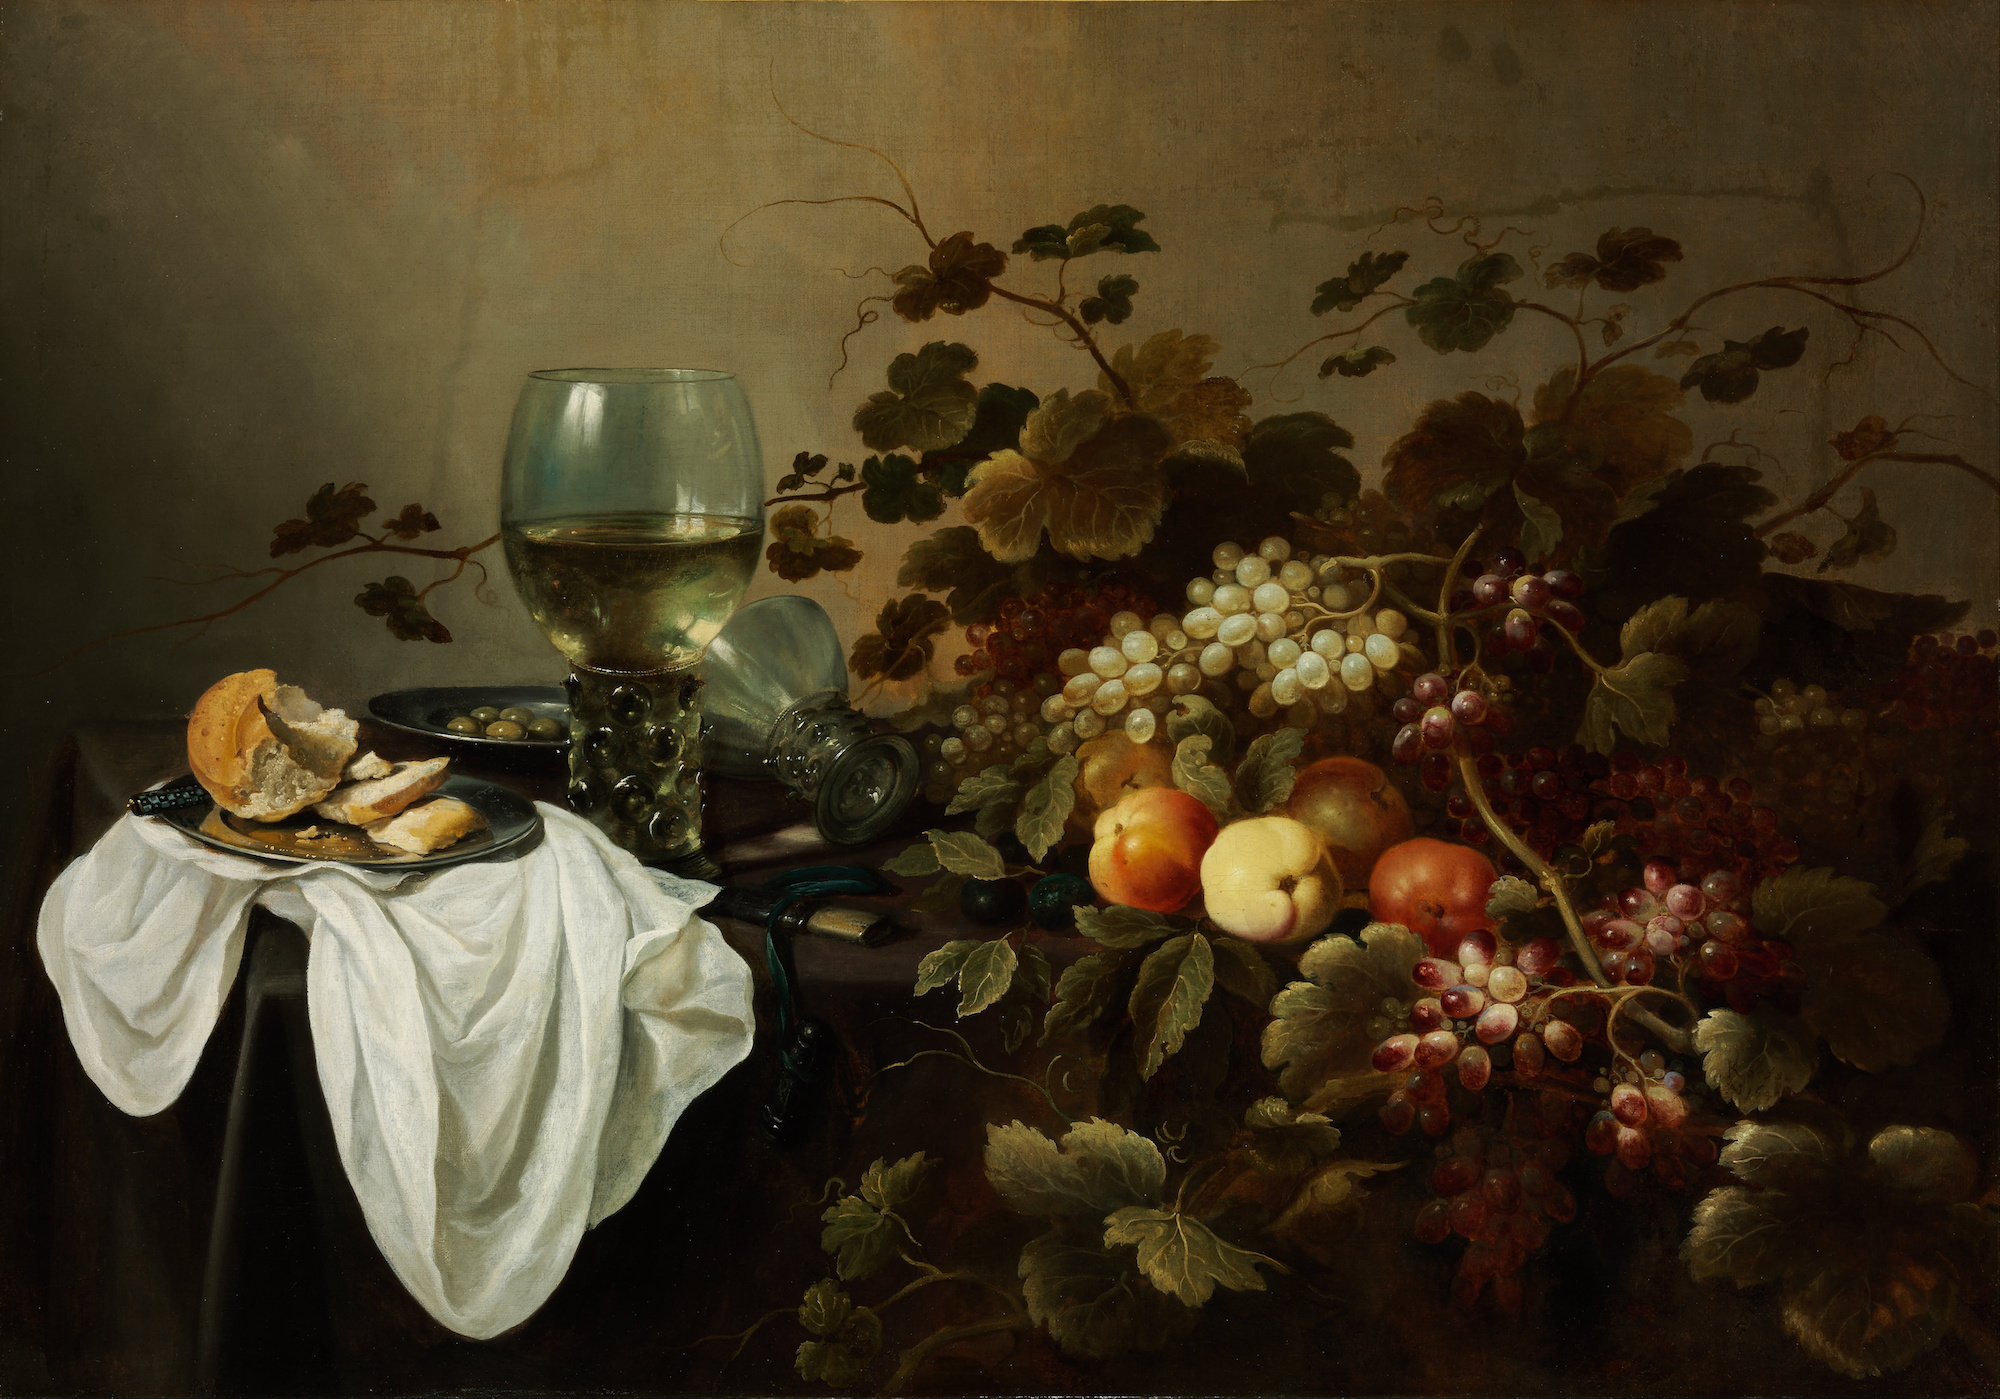 Natură moartă cu fructe și pahar Roemer by Pieter Claesz - 1644 - 104.5 x 146 cm 